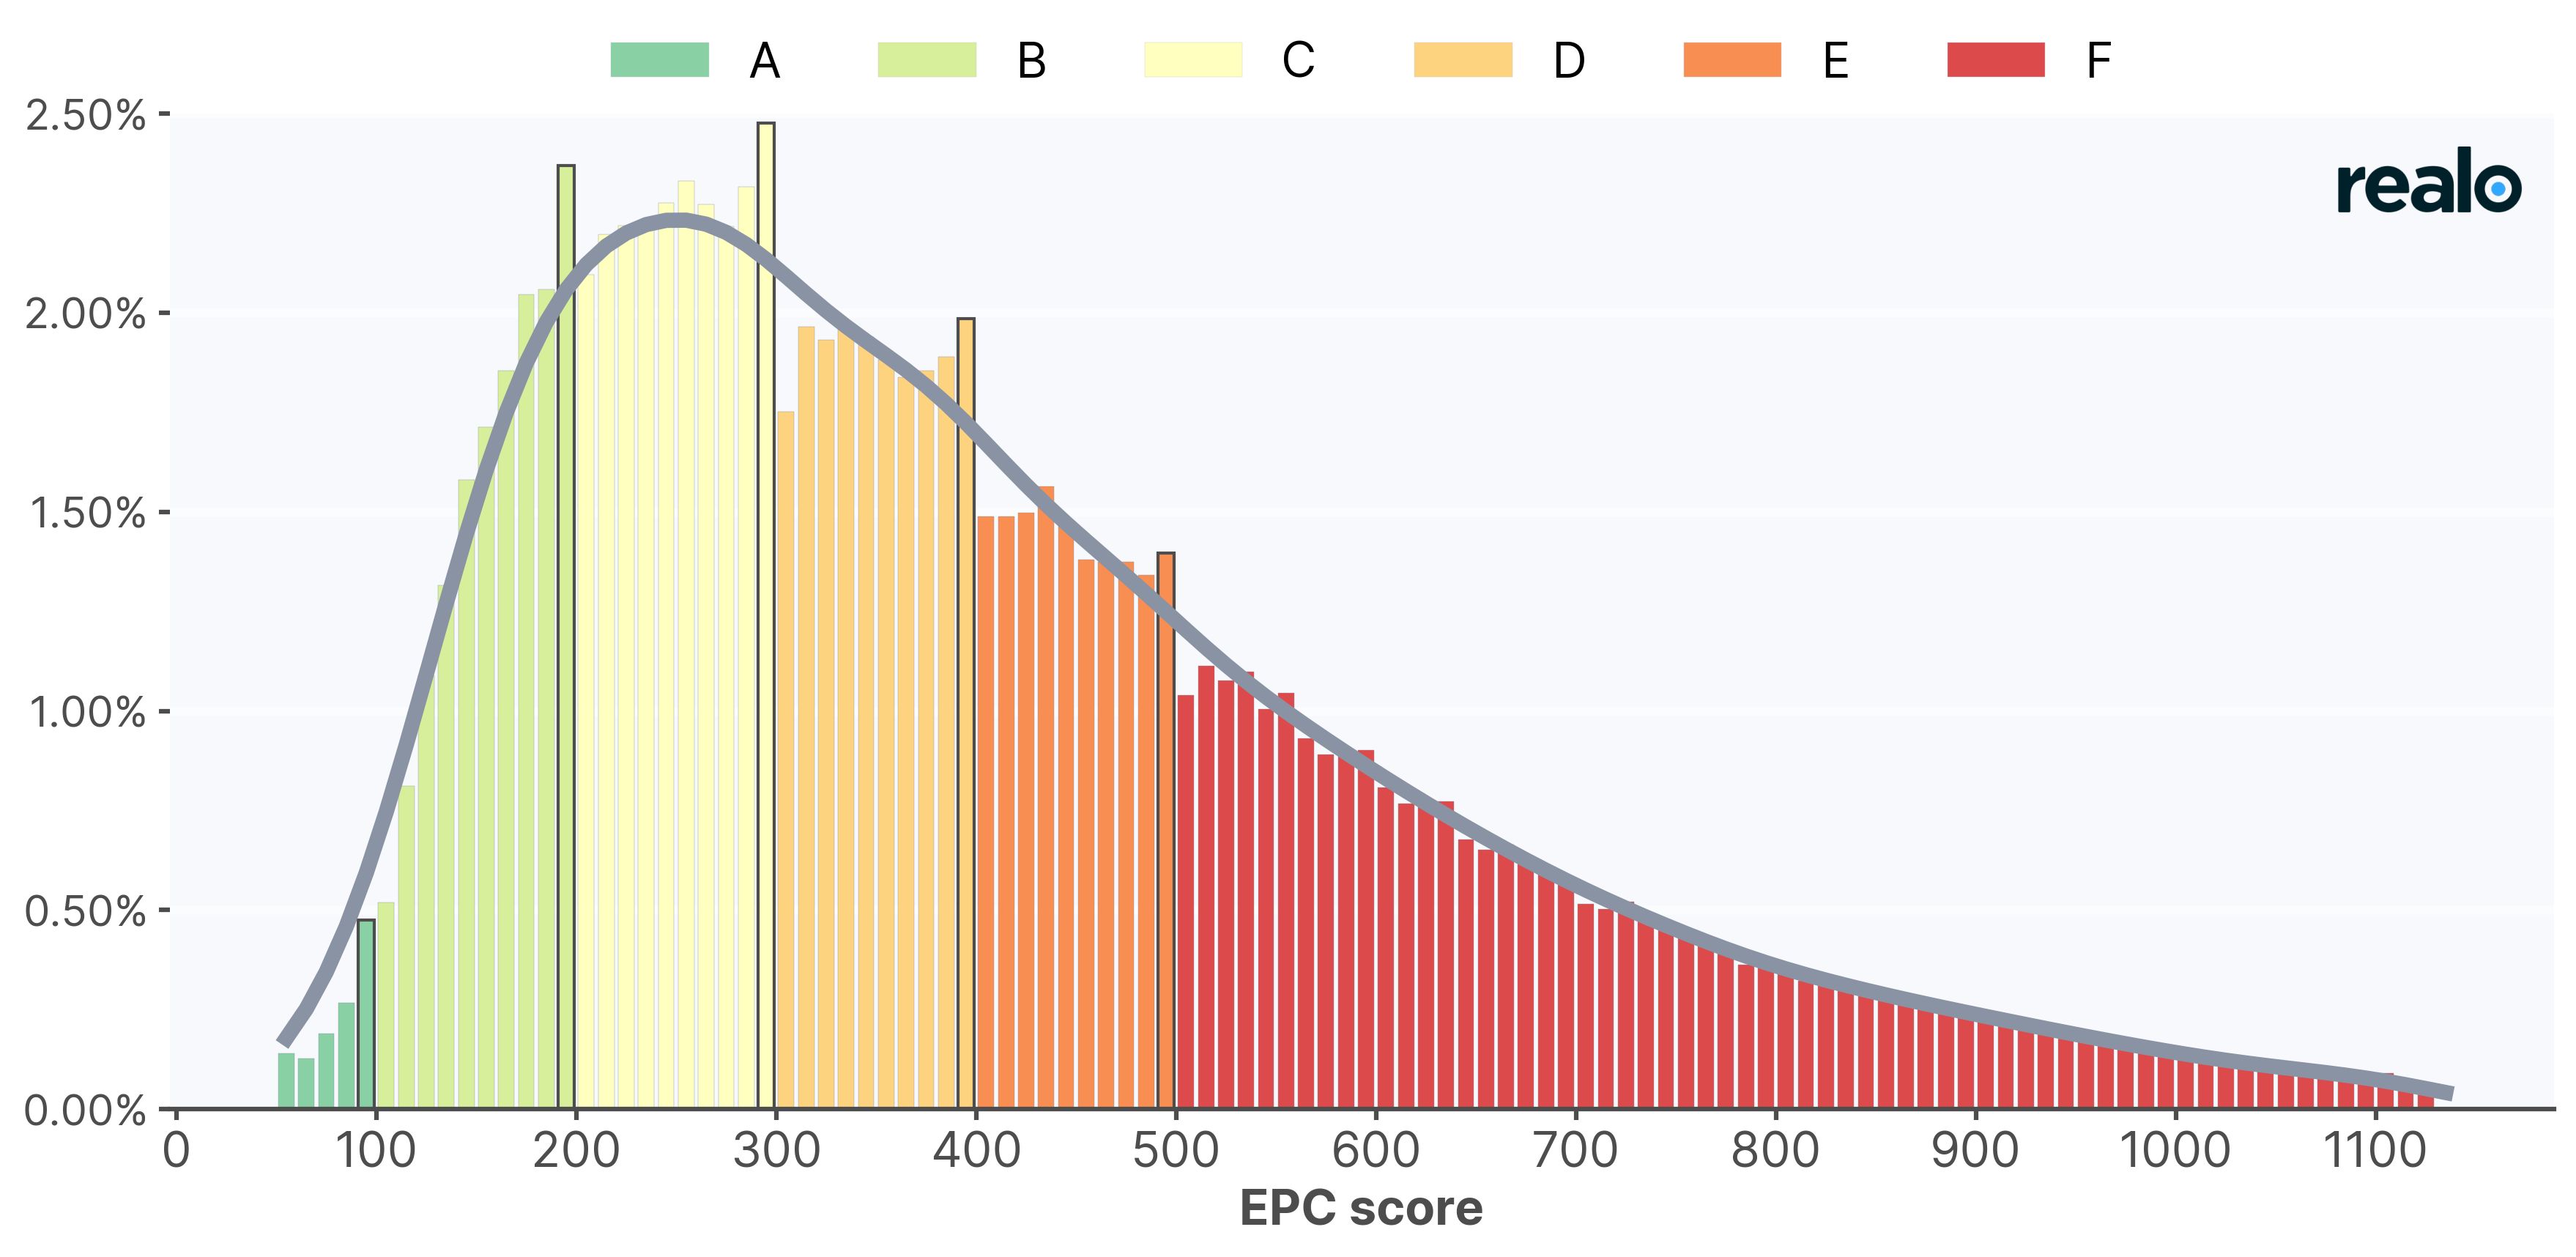 De donkere lijn toont de verwachte verdeling van EPC scores zoals in de tweede figuur bovenop de echte verdeling. Op deze manier is het nog duidelijker dat EPC scores net onder de labelgrens veel vaker voorkomen dan je zou verwachten. Bron: Realo